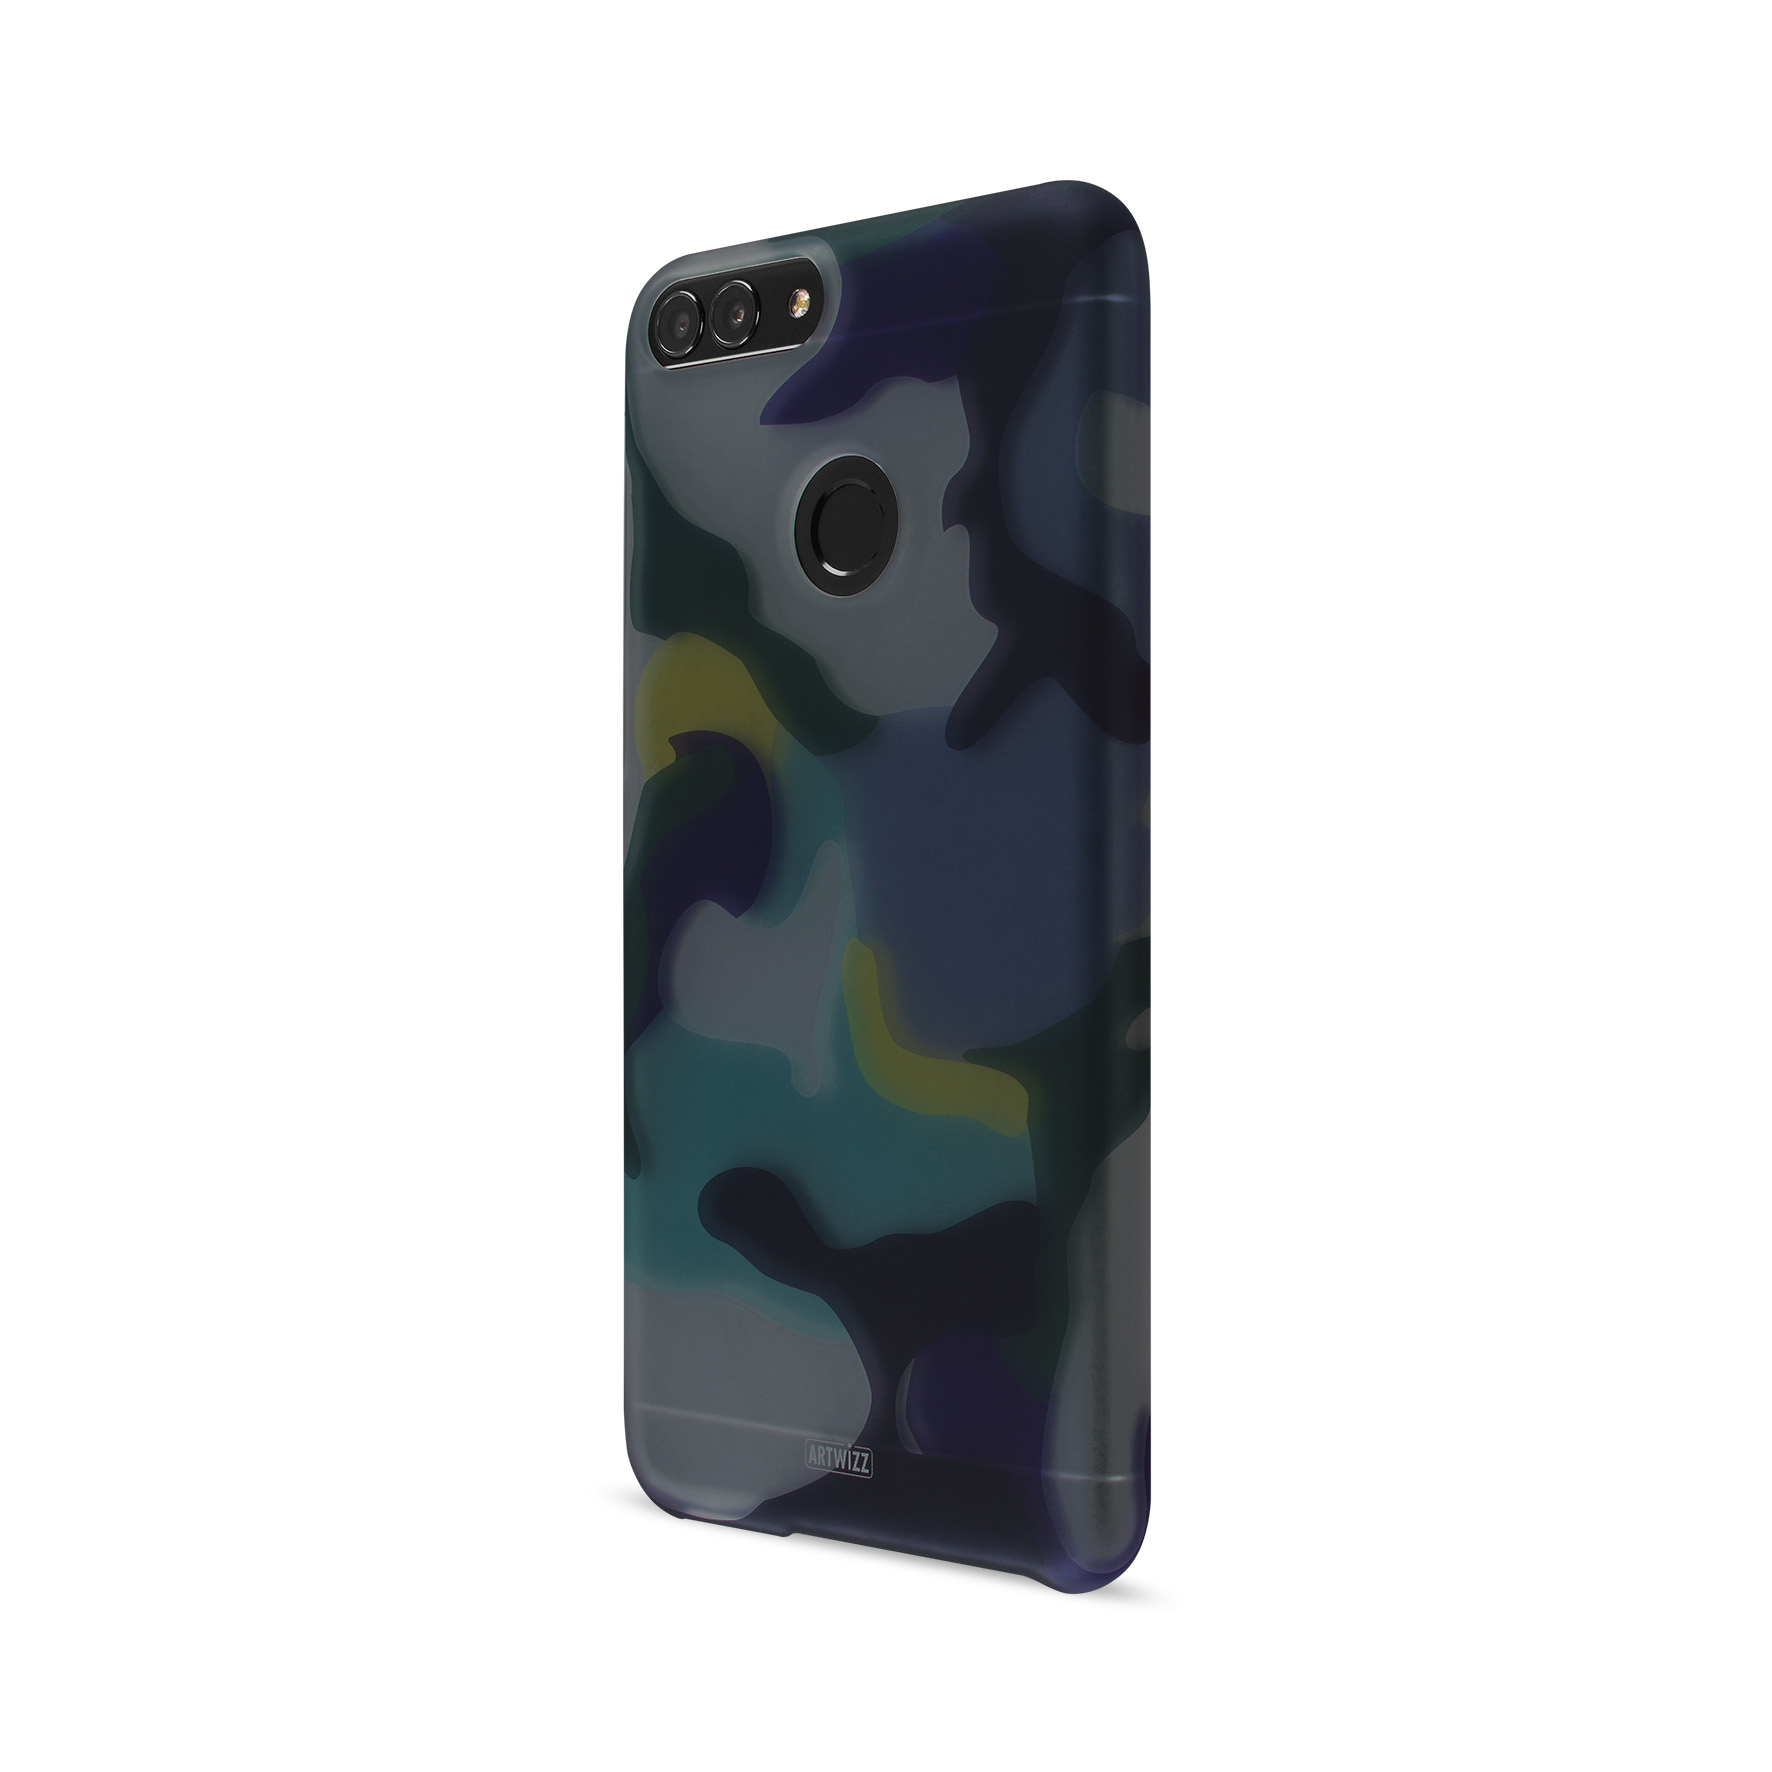 Artwizz CamouflageClip für Huawei P Smart - Camouflage Ocean